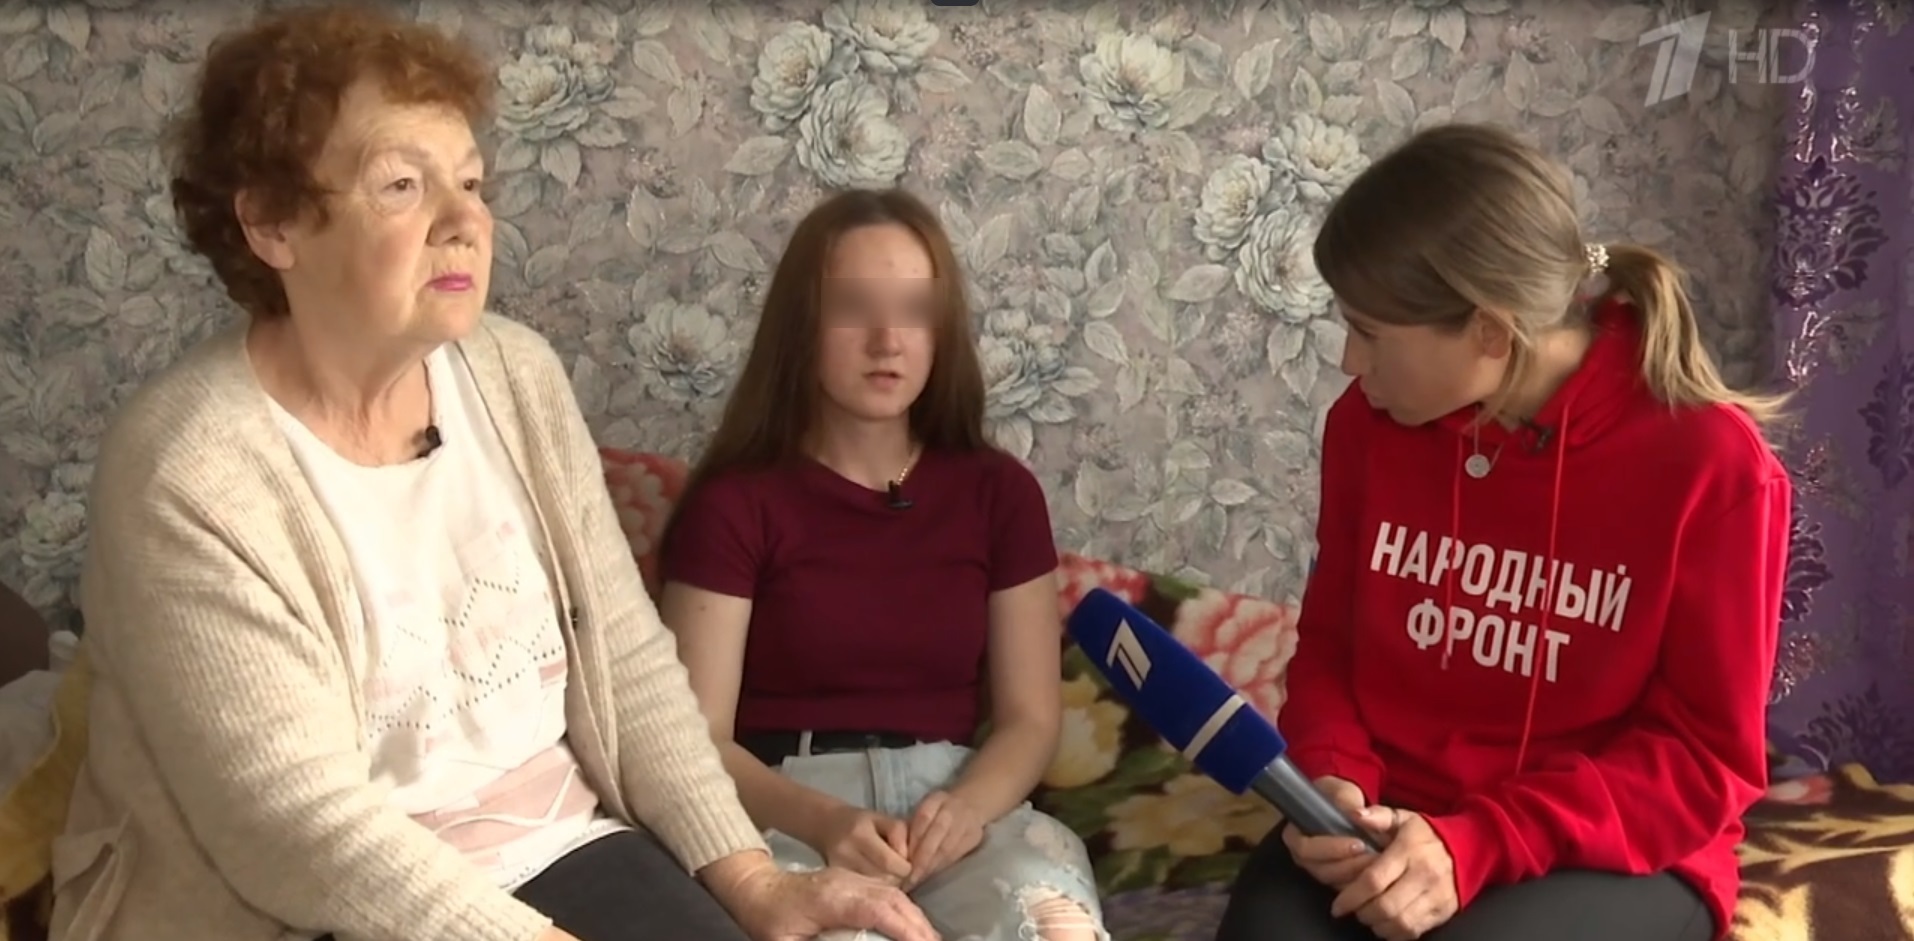 16-летняя девочка из Кольчугино в эфире Первого канала попросила лишить своих родителей прав